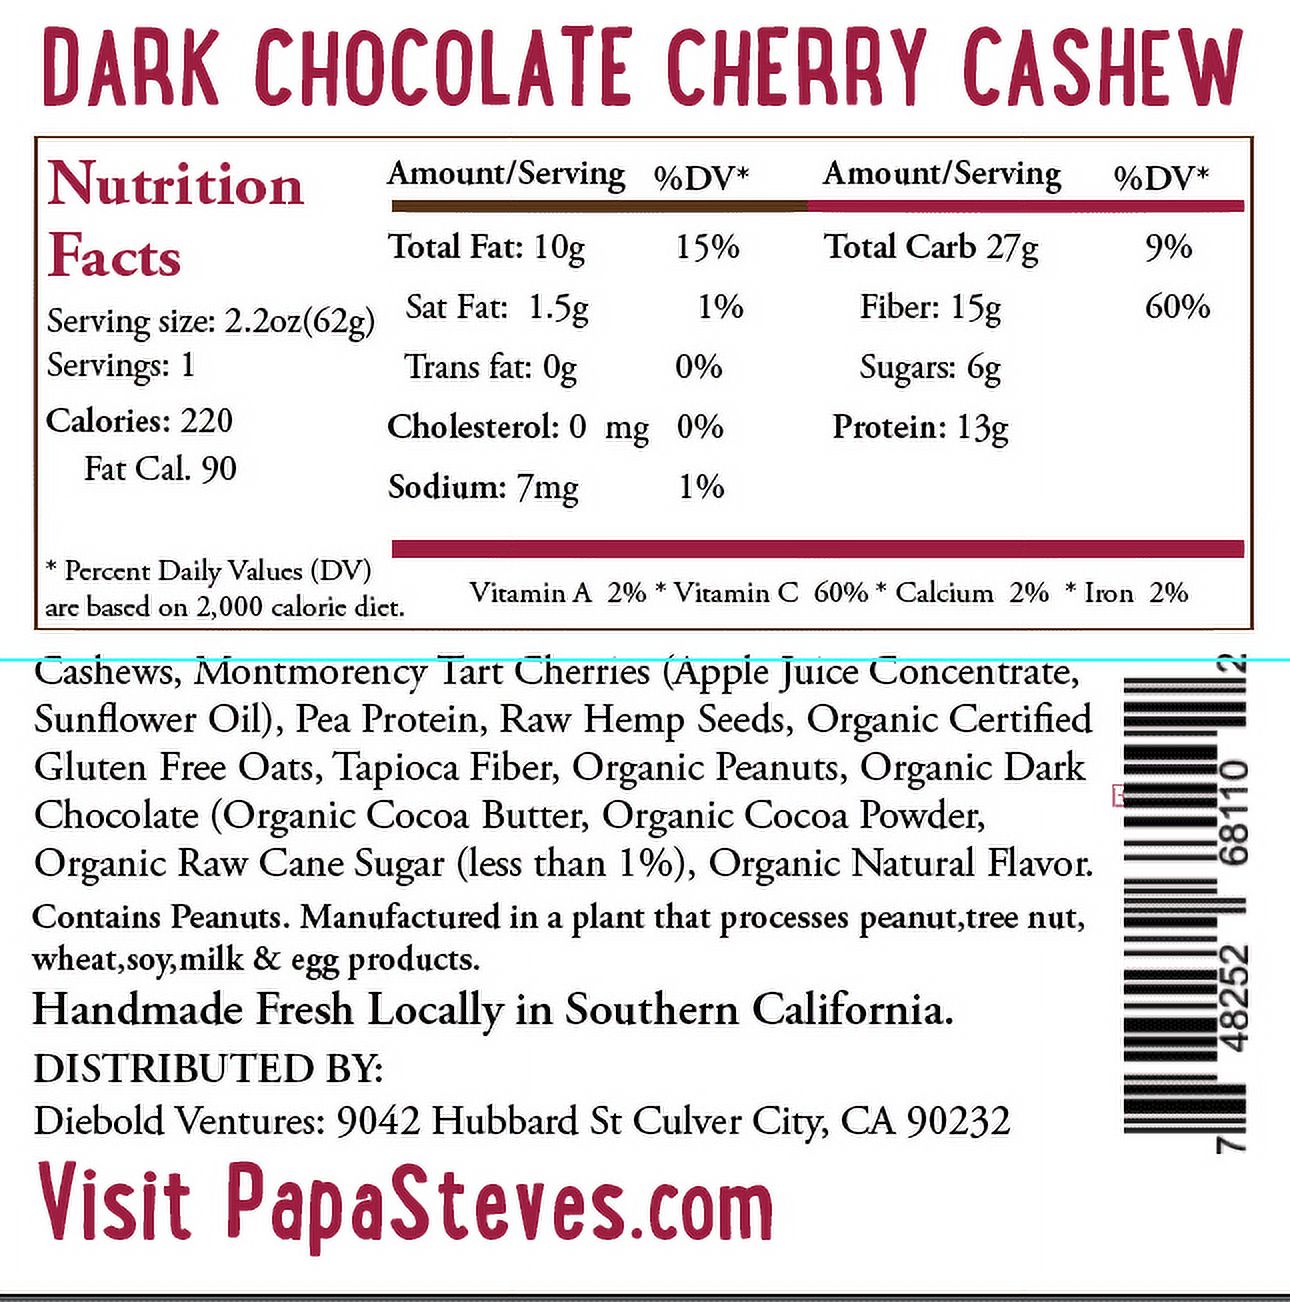 Papa Steve's No Junk Raw Vegan Protein Bars: Non GMO, Gluten Free, 100% Natural, Hand-Made Weekly - Dark Chocolate Cherry Cashew (Pack of 10) - image 2 of 4